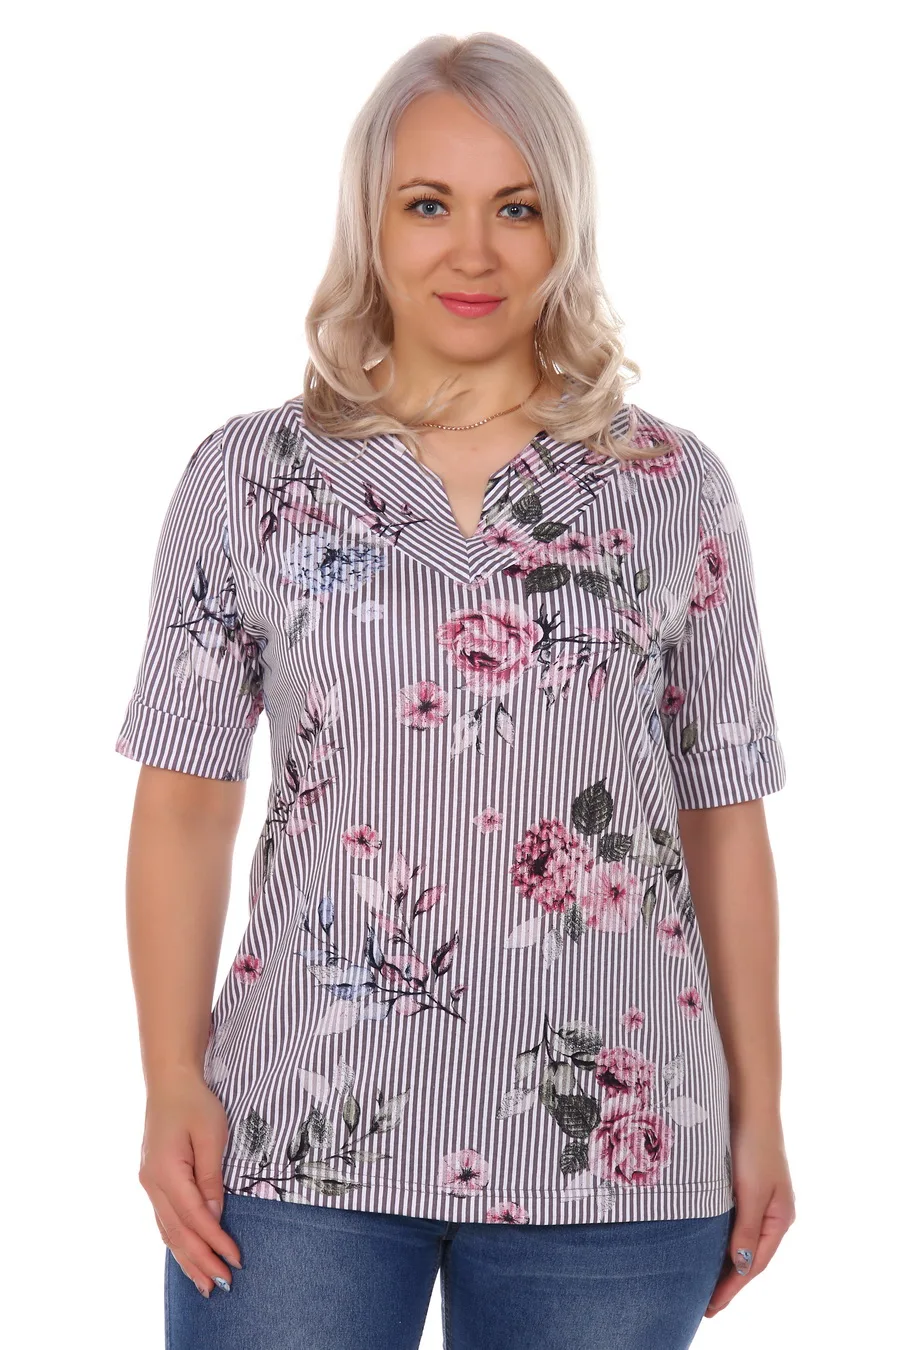 Женский блуза 50-64 размеры Кулирка с коротким рукавом отложным воротником